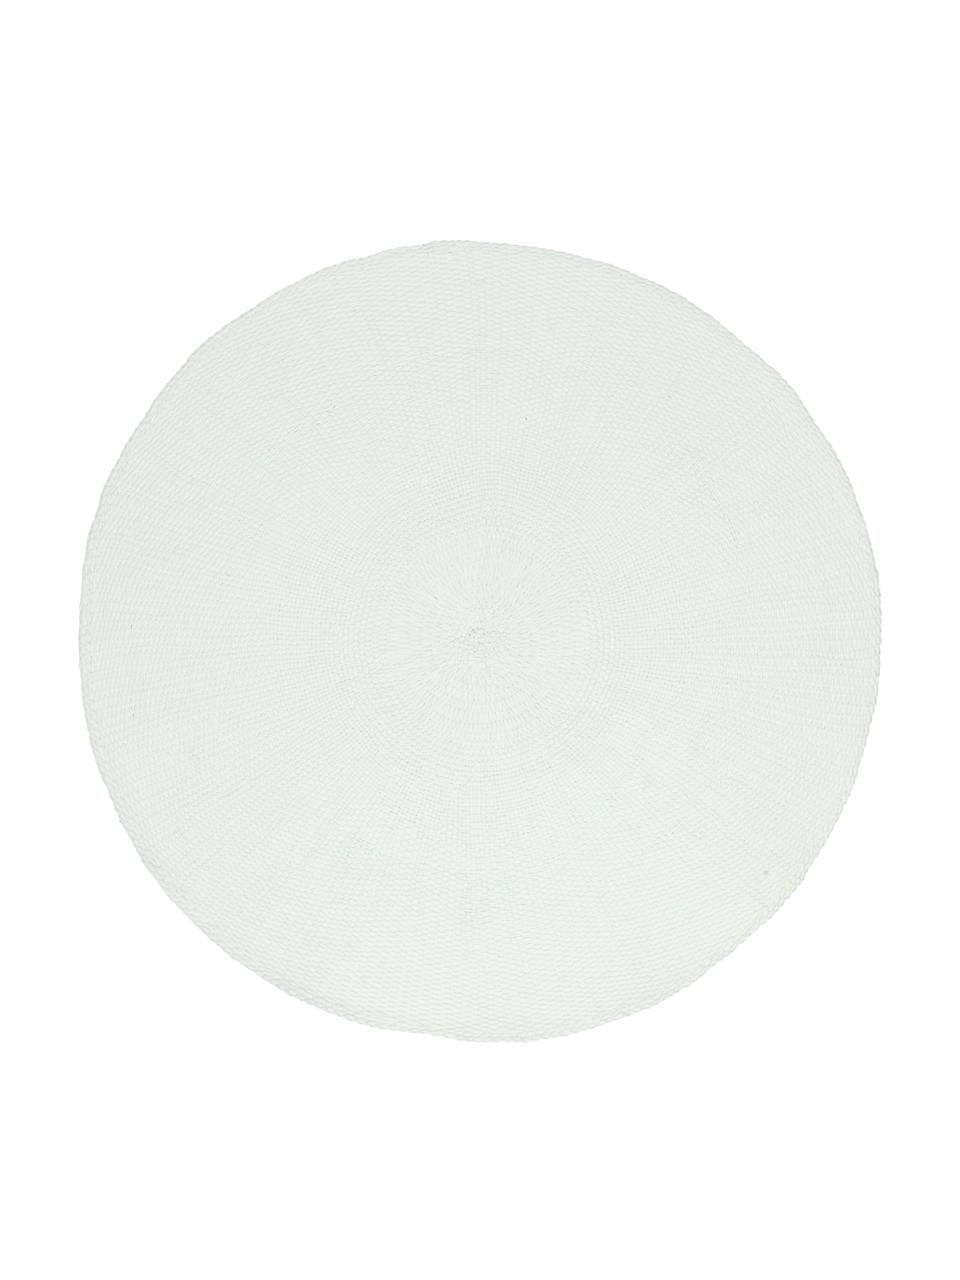 Okrągła podkładka Kolori, 2 szt., Włókna papierowe, Biały, Ø 38 cm